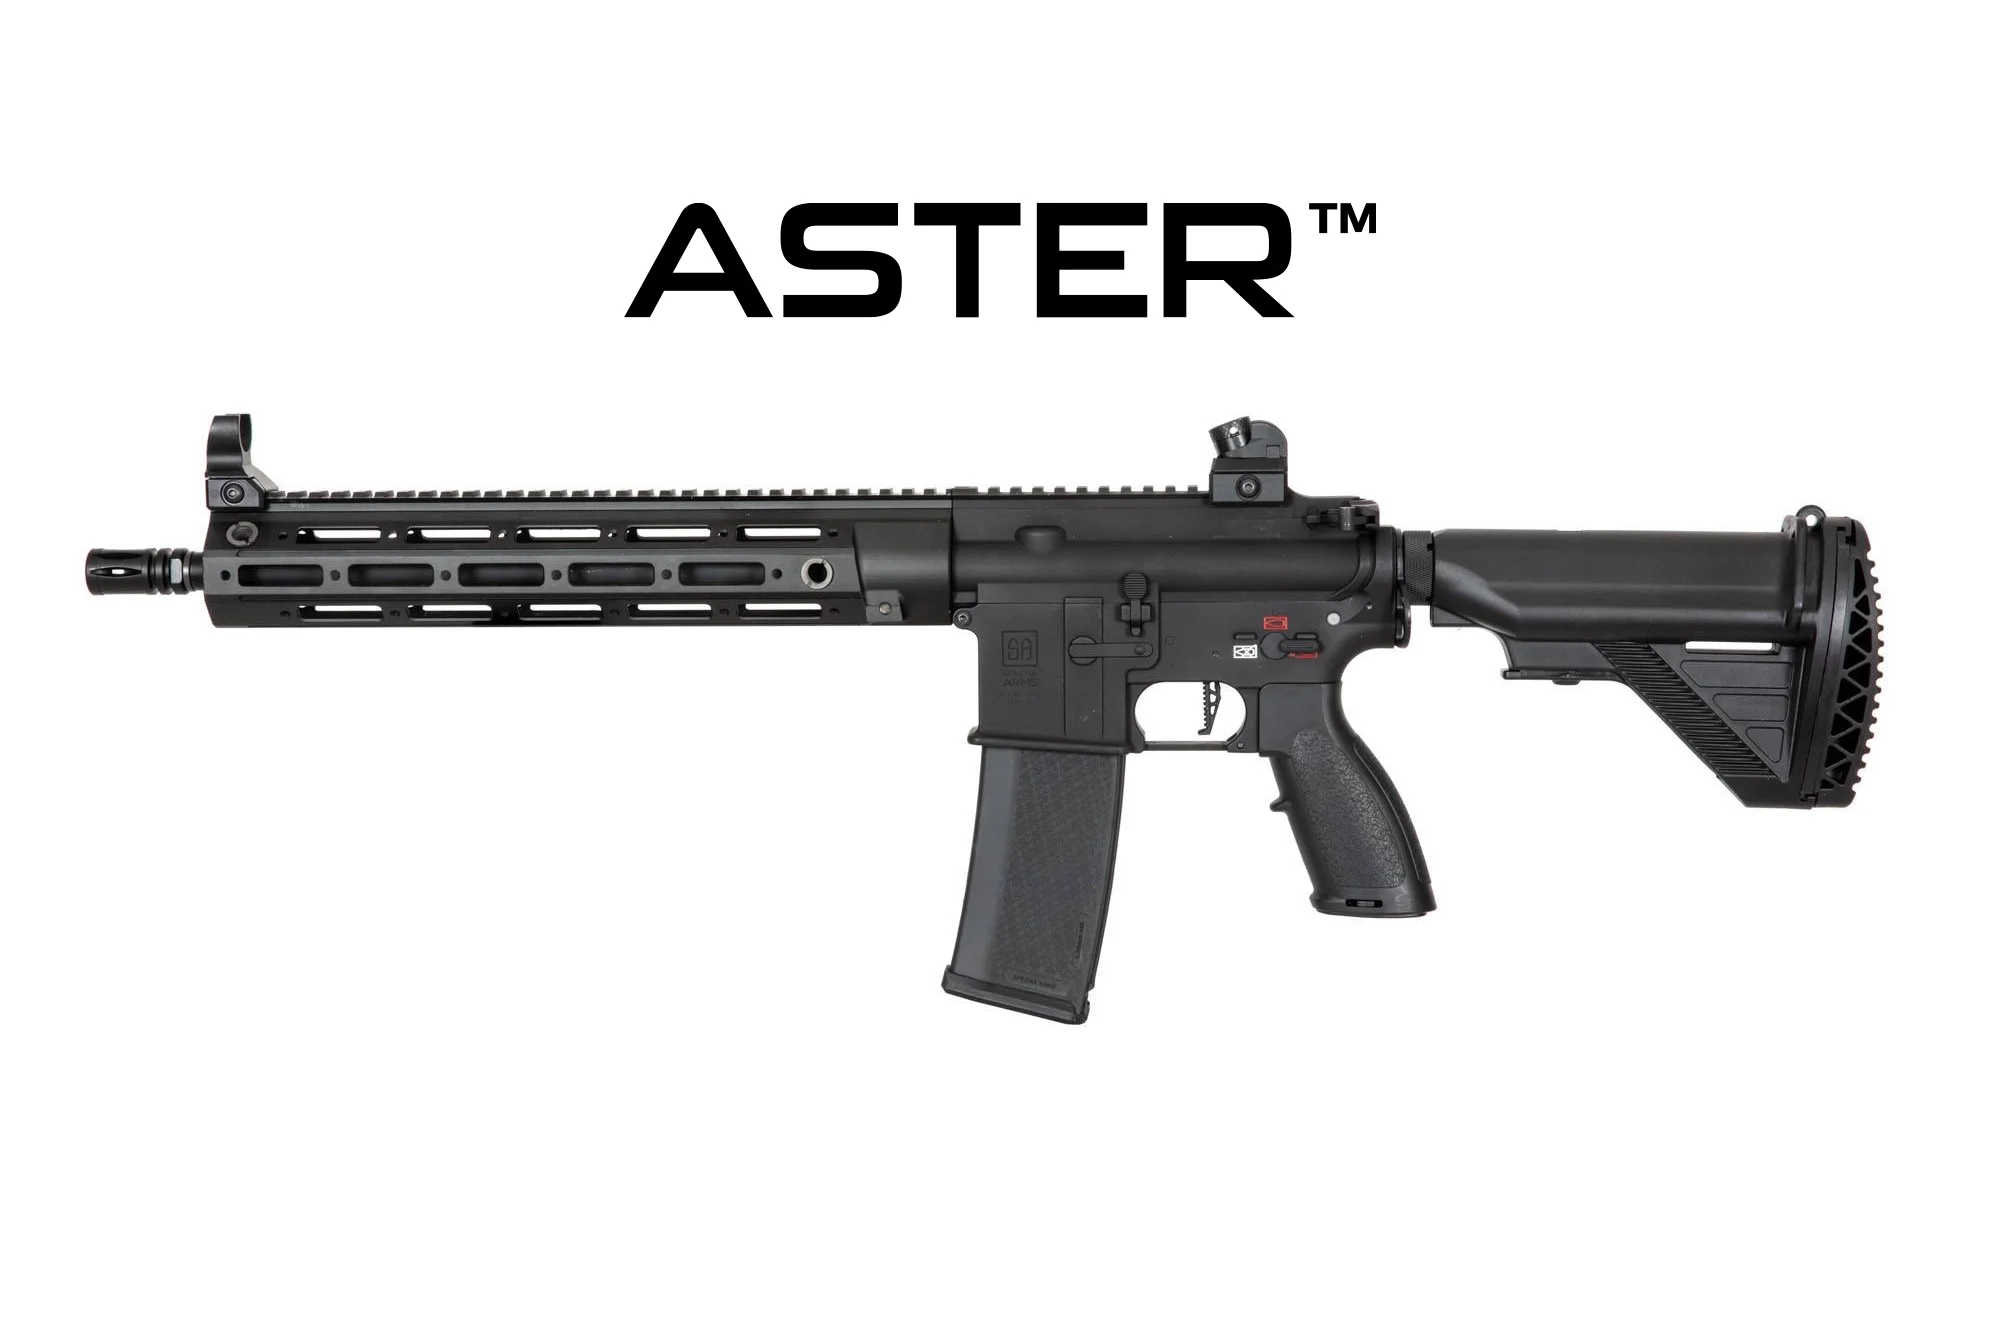 SA-H22 EDGE 2.0™GATE ASTER carbine replica - black